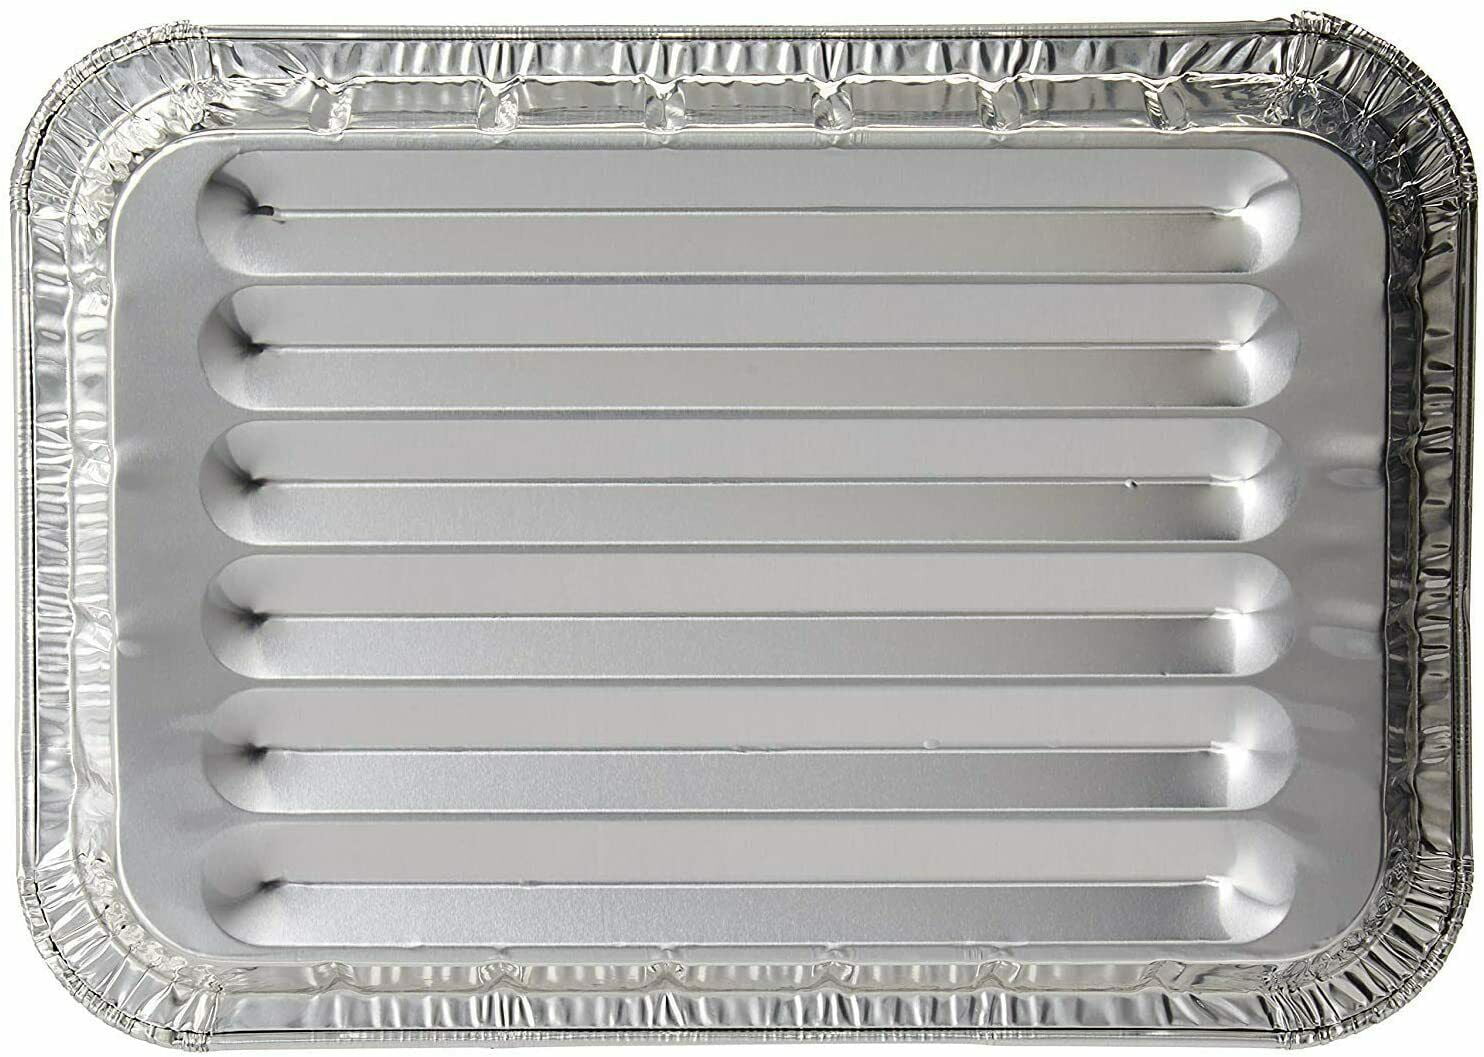 Small Broiler Disposable Aluminum Baking Pan 9 x 6 x 1.33